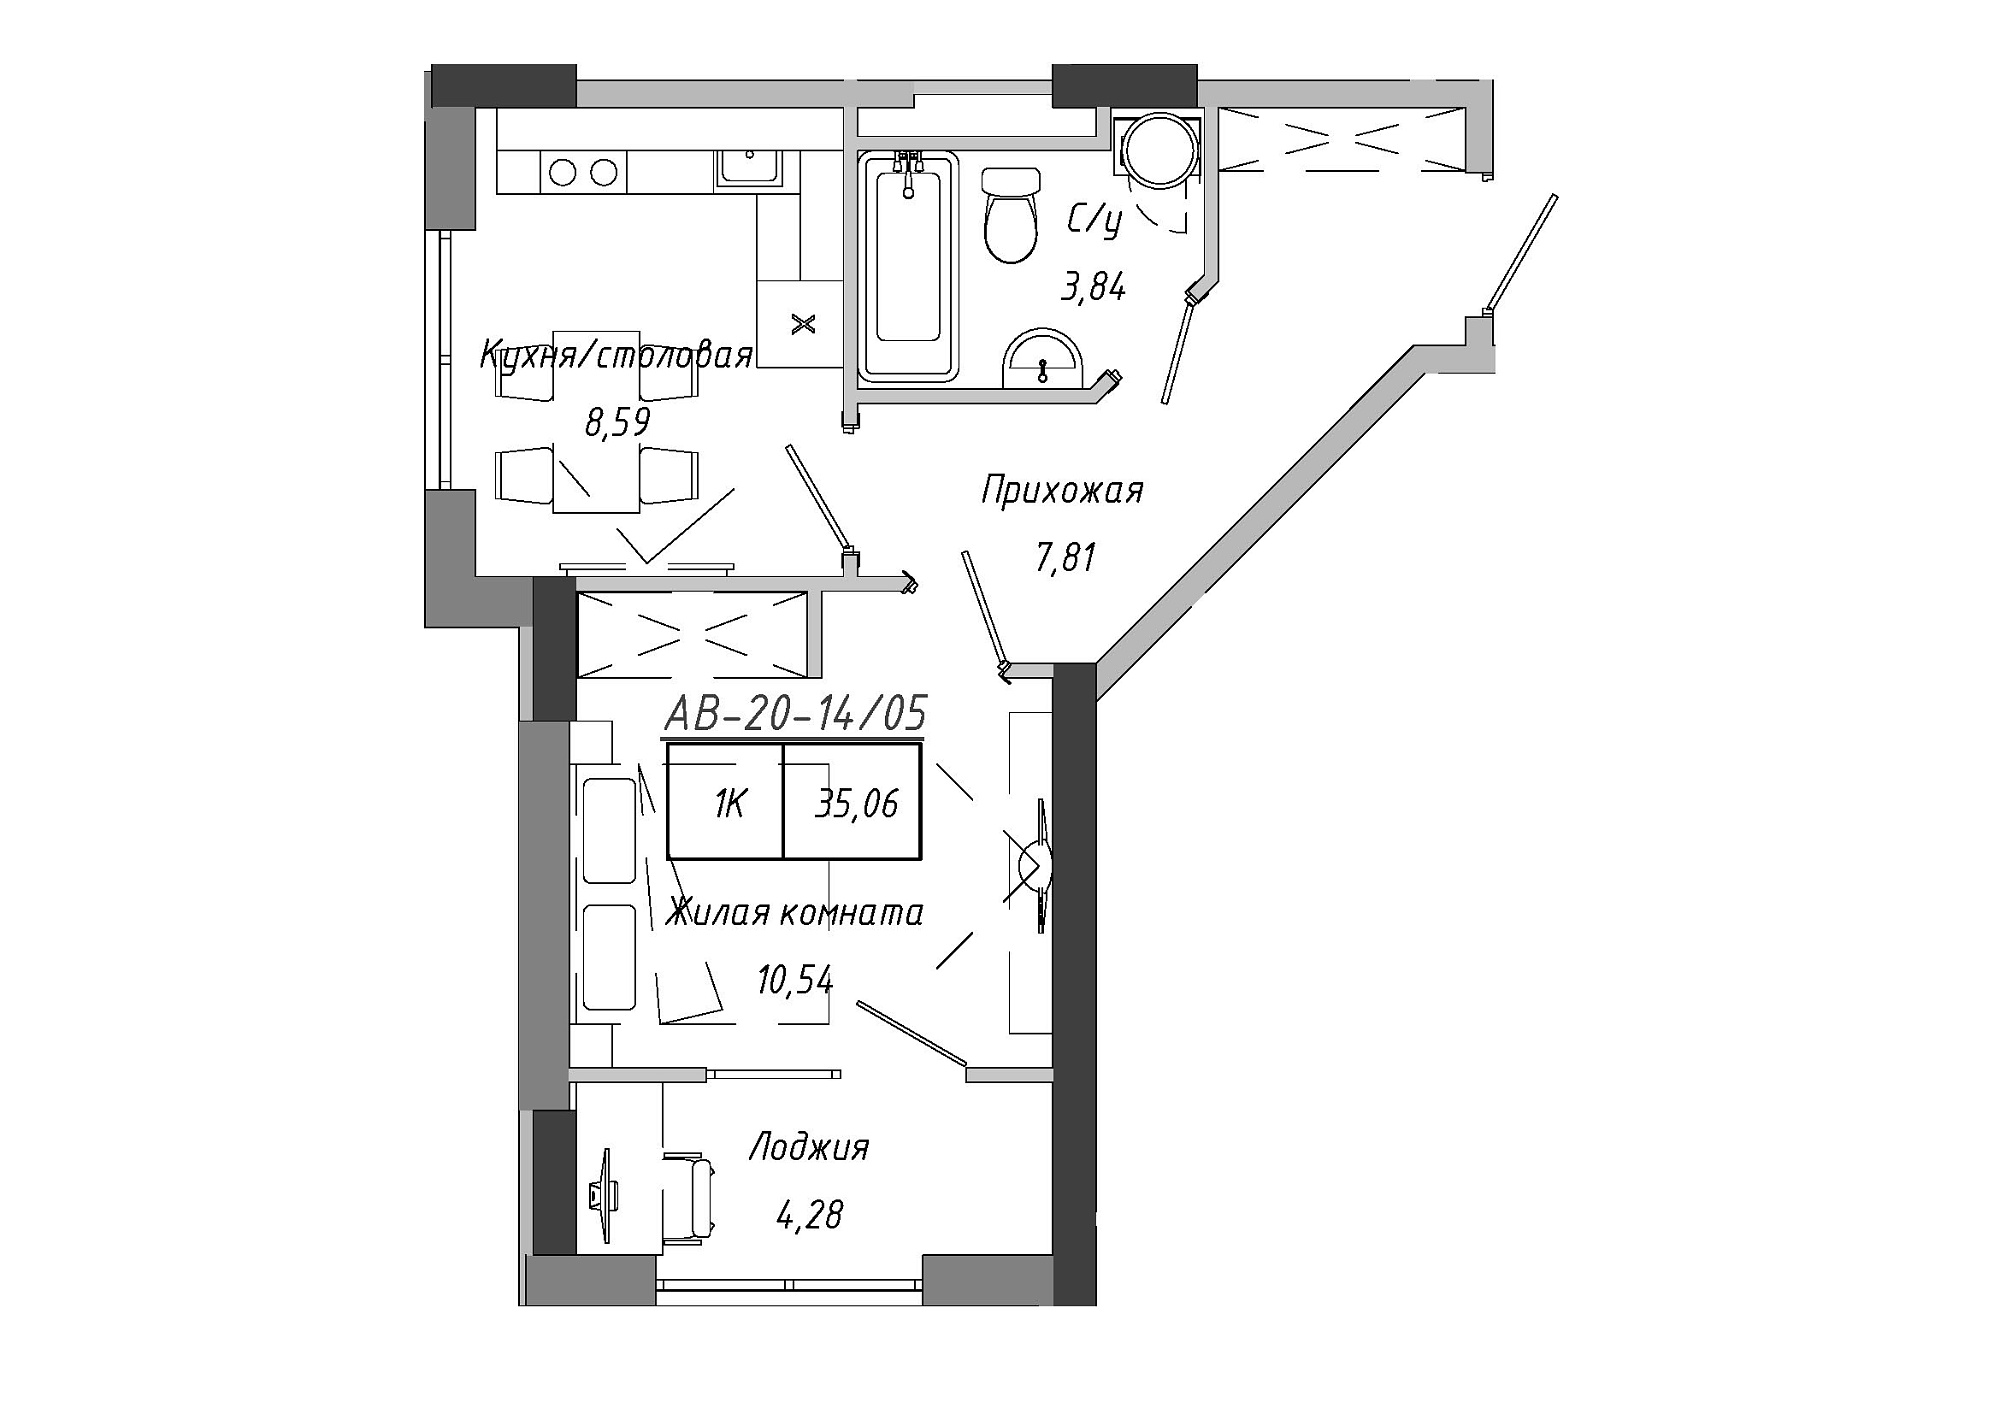 Планування 1-к квартира площею 35.06м2, AB-20-14/00105.